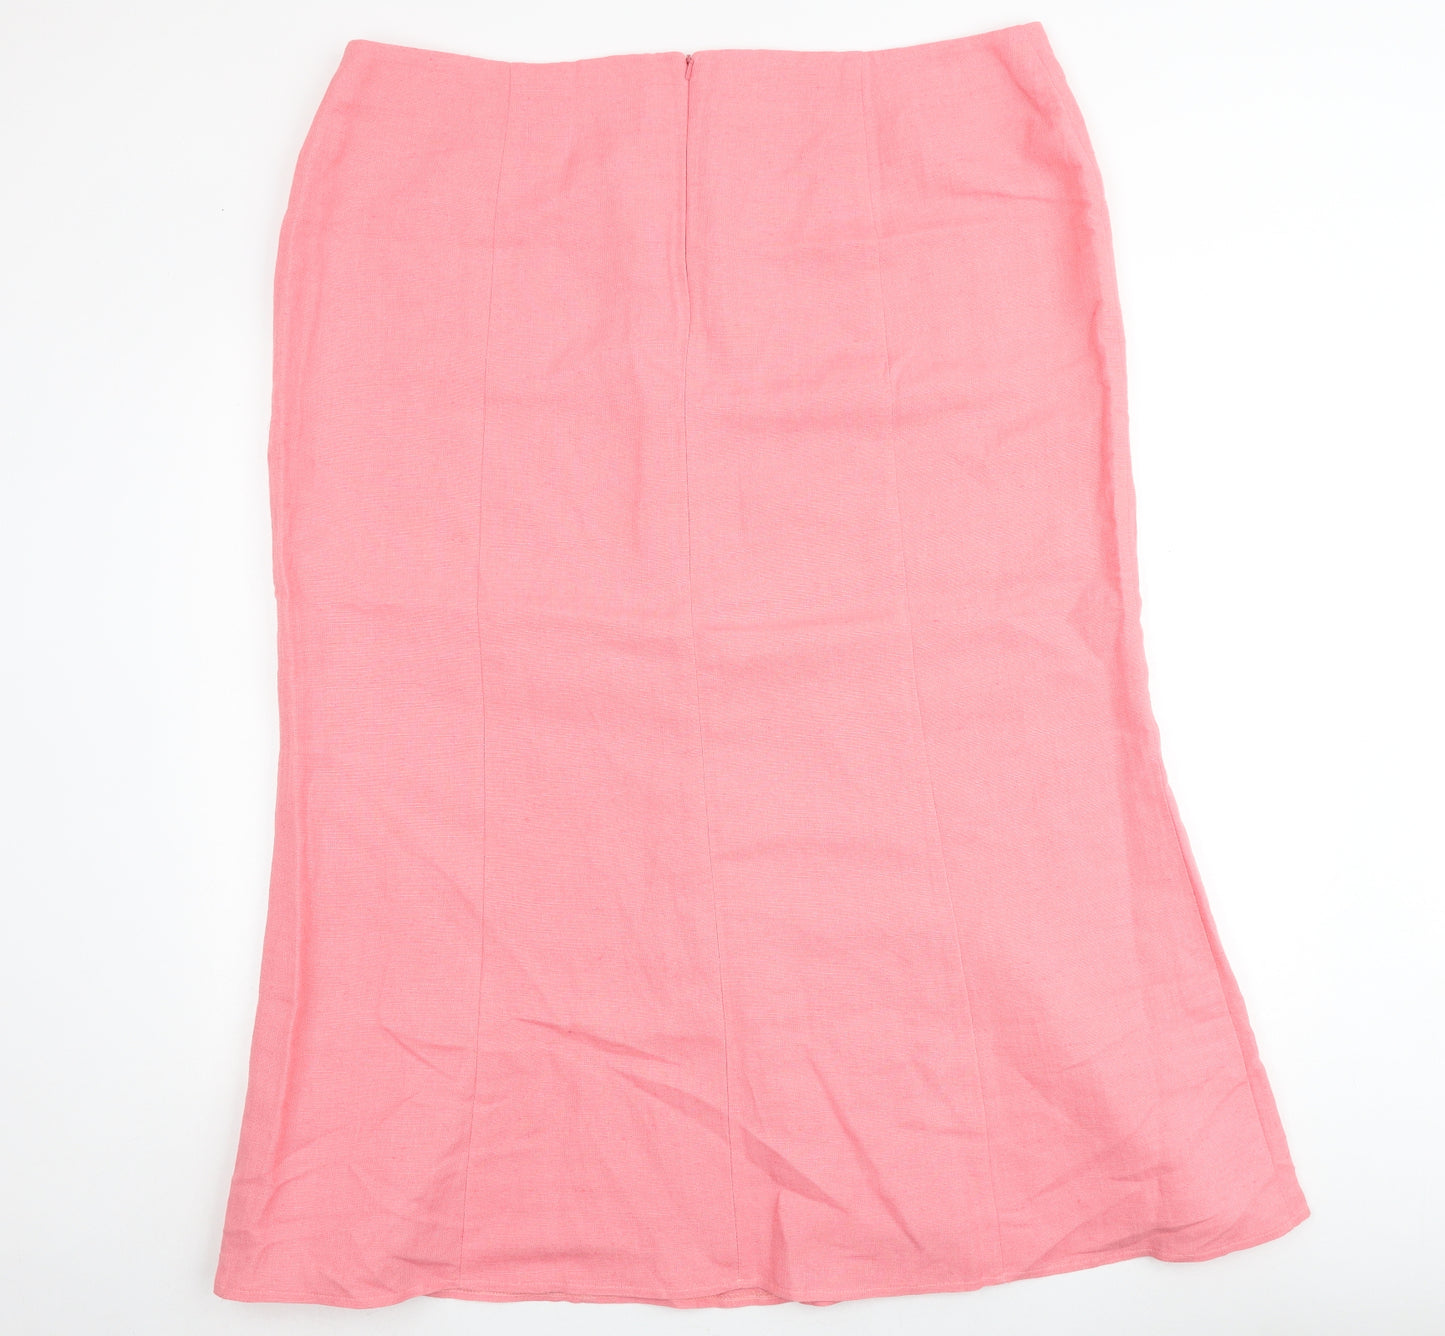 Ann Harvey Womens Pink Linen A-Line Skirt Size 22 Zip